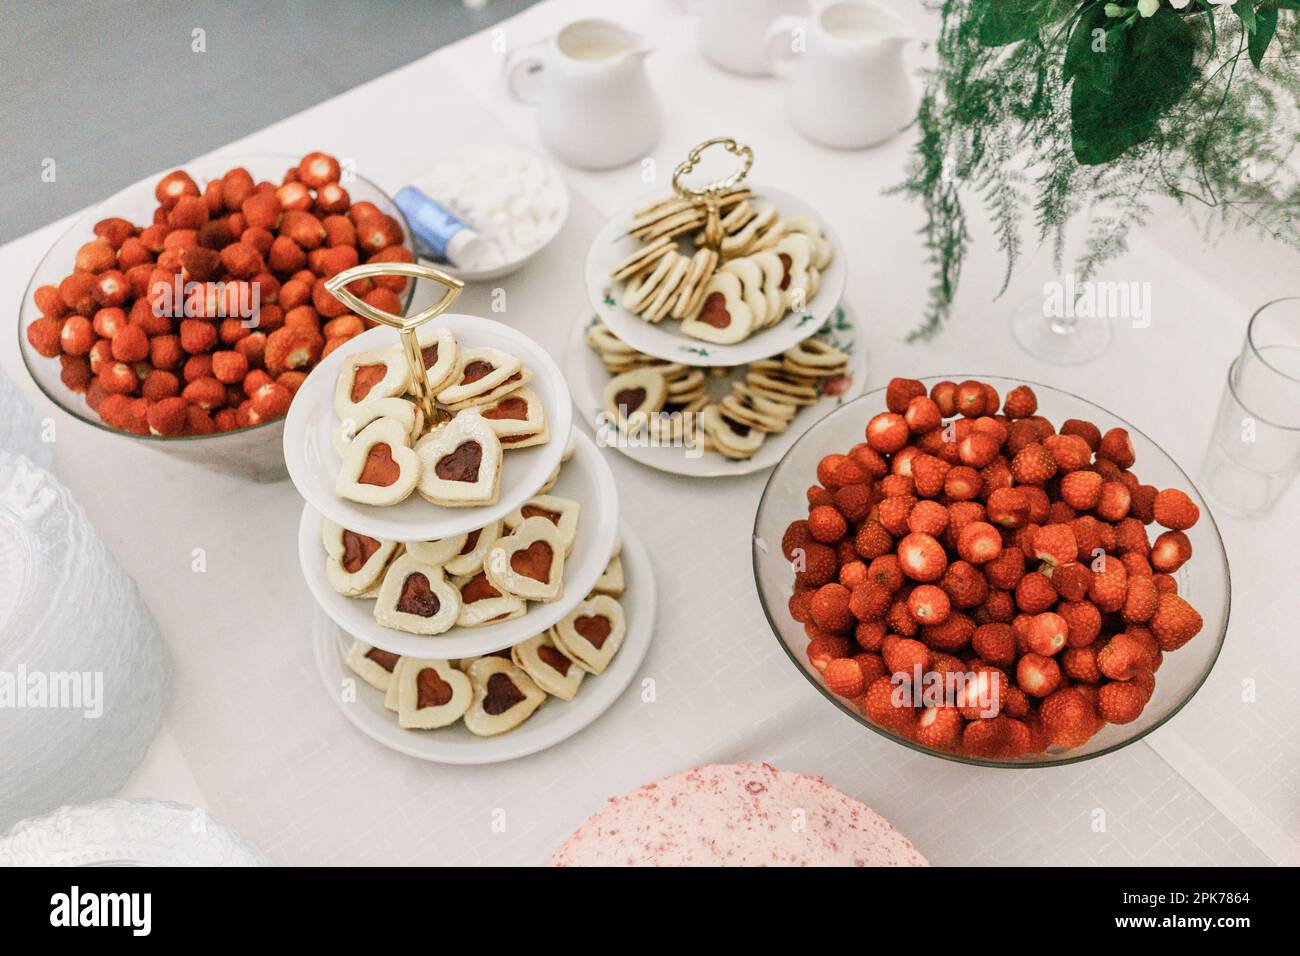 Caramelle per feste con fragole e biscotti sul tavolo, vista dall'alto Foto Stock